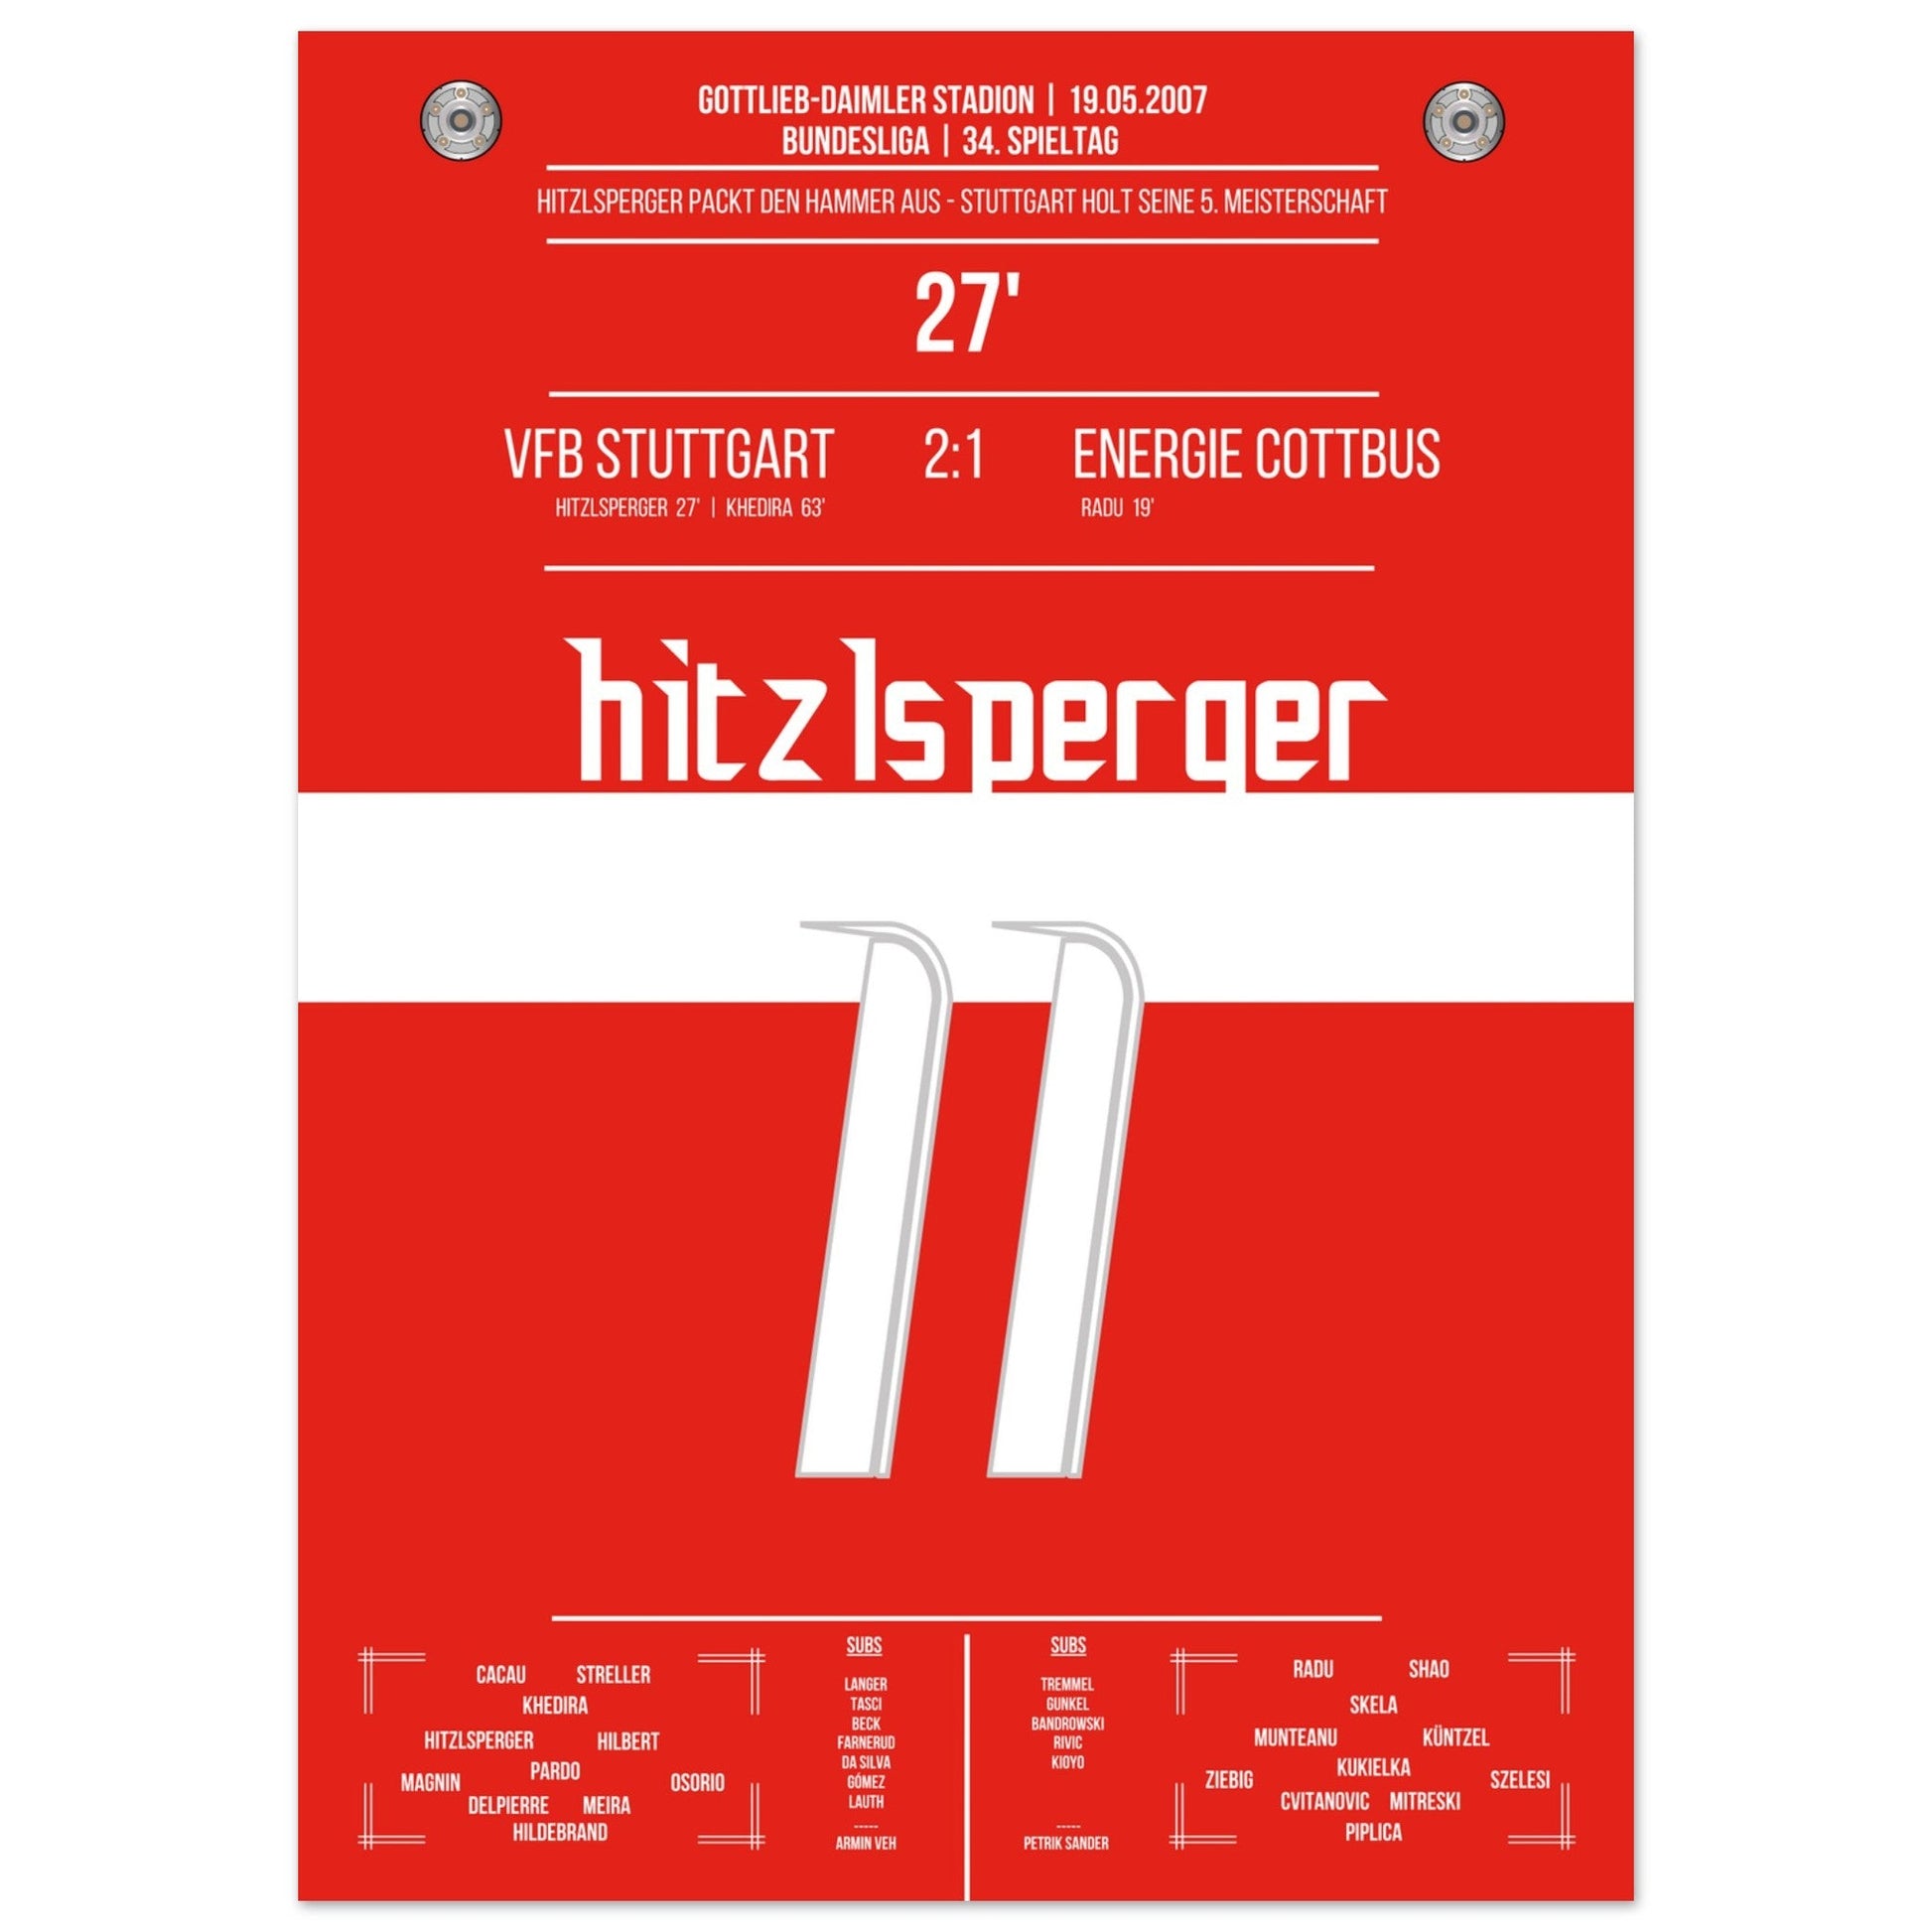 Hitzlsperger-Hammer bei Stuttgart's Gewinn der Meisterschaft 2007 50x70-cm-20x28-Ohne-Rahmen